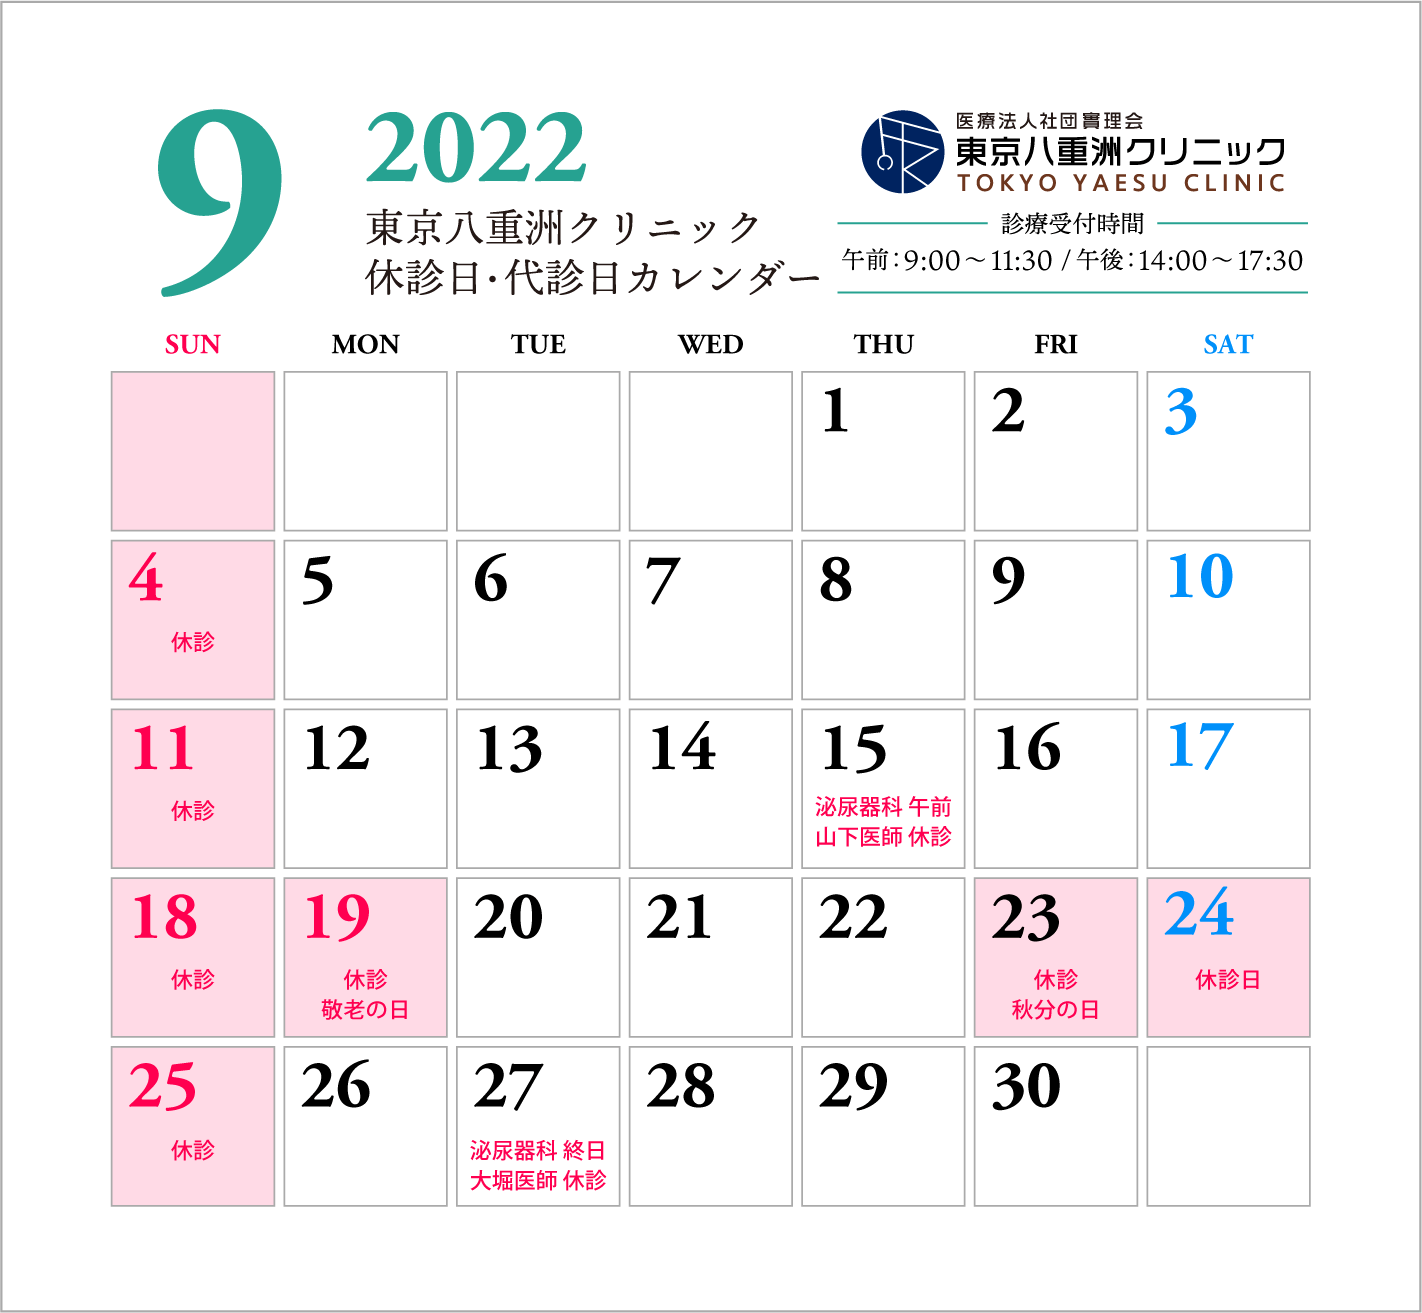 【更新】9月休診日・代診日のお知らせ